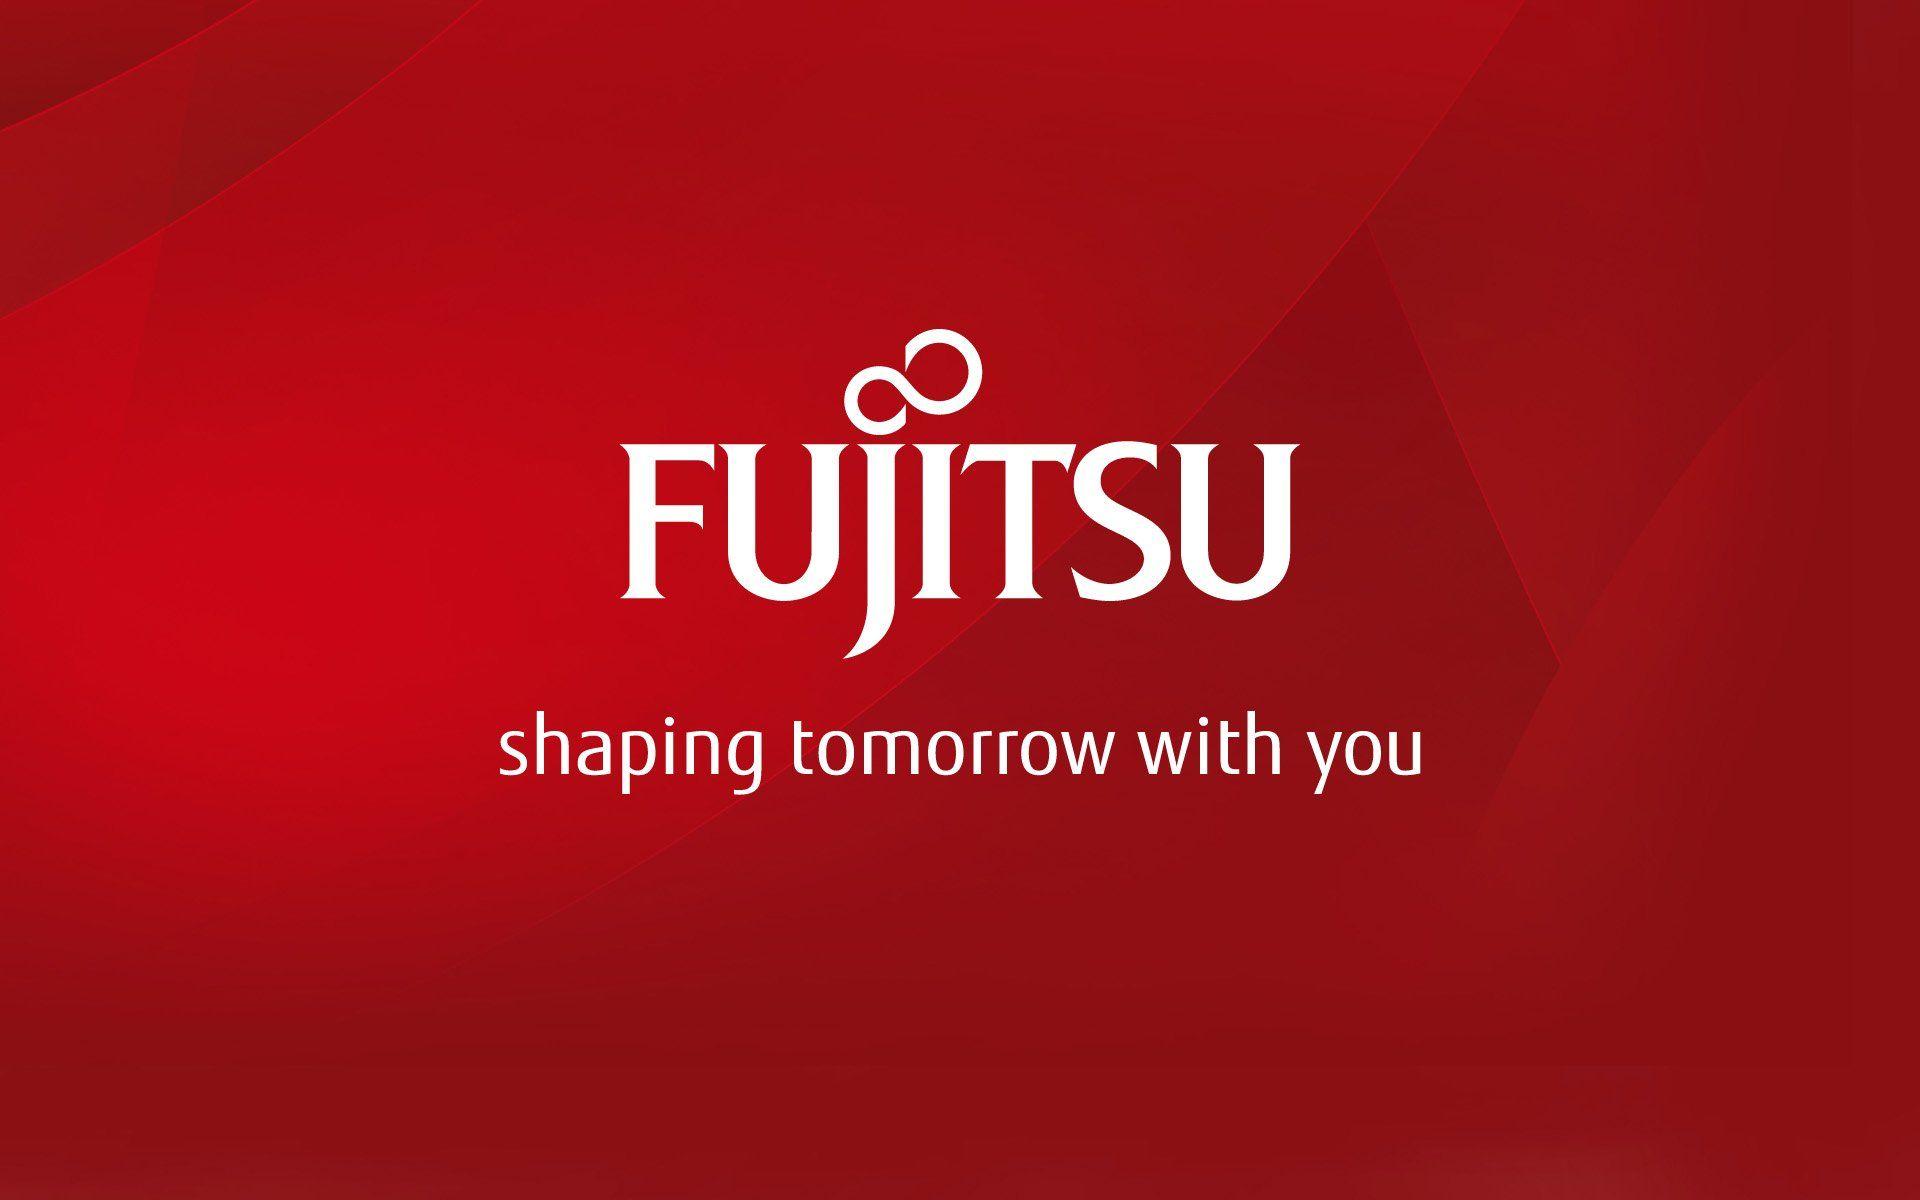 Fujitsu Wallpaper